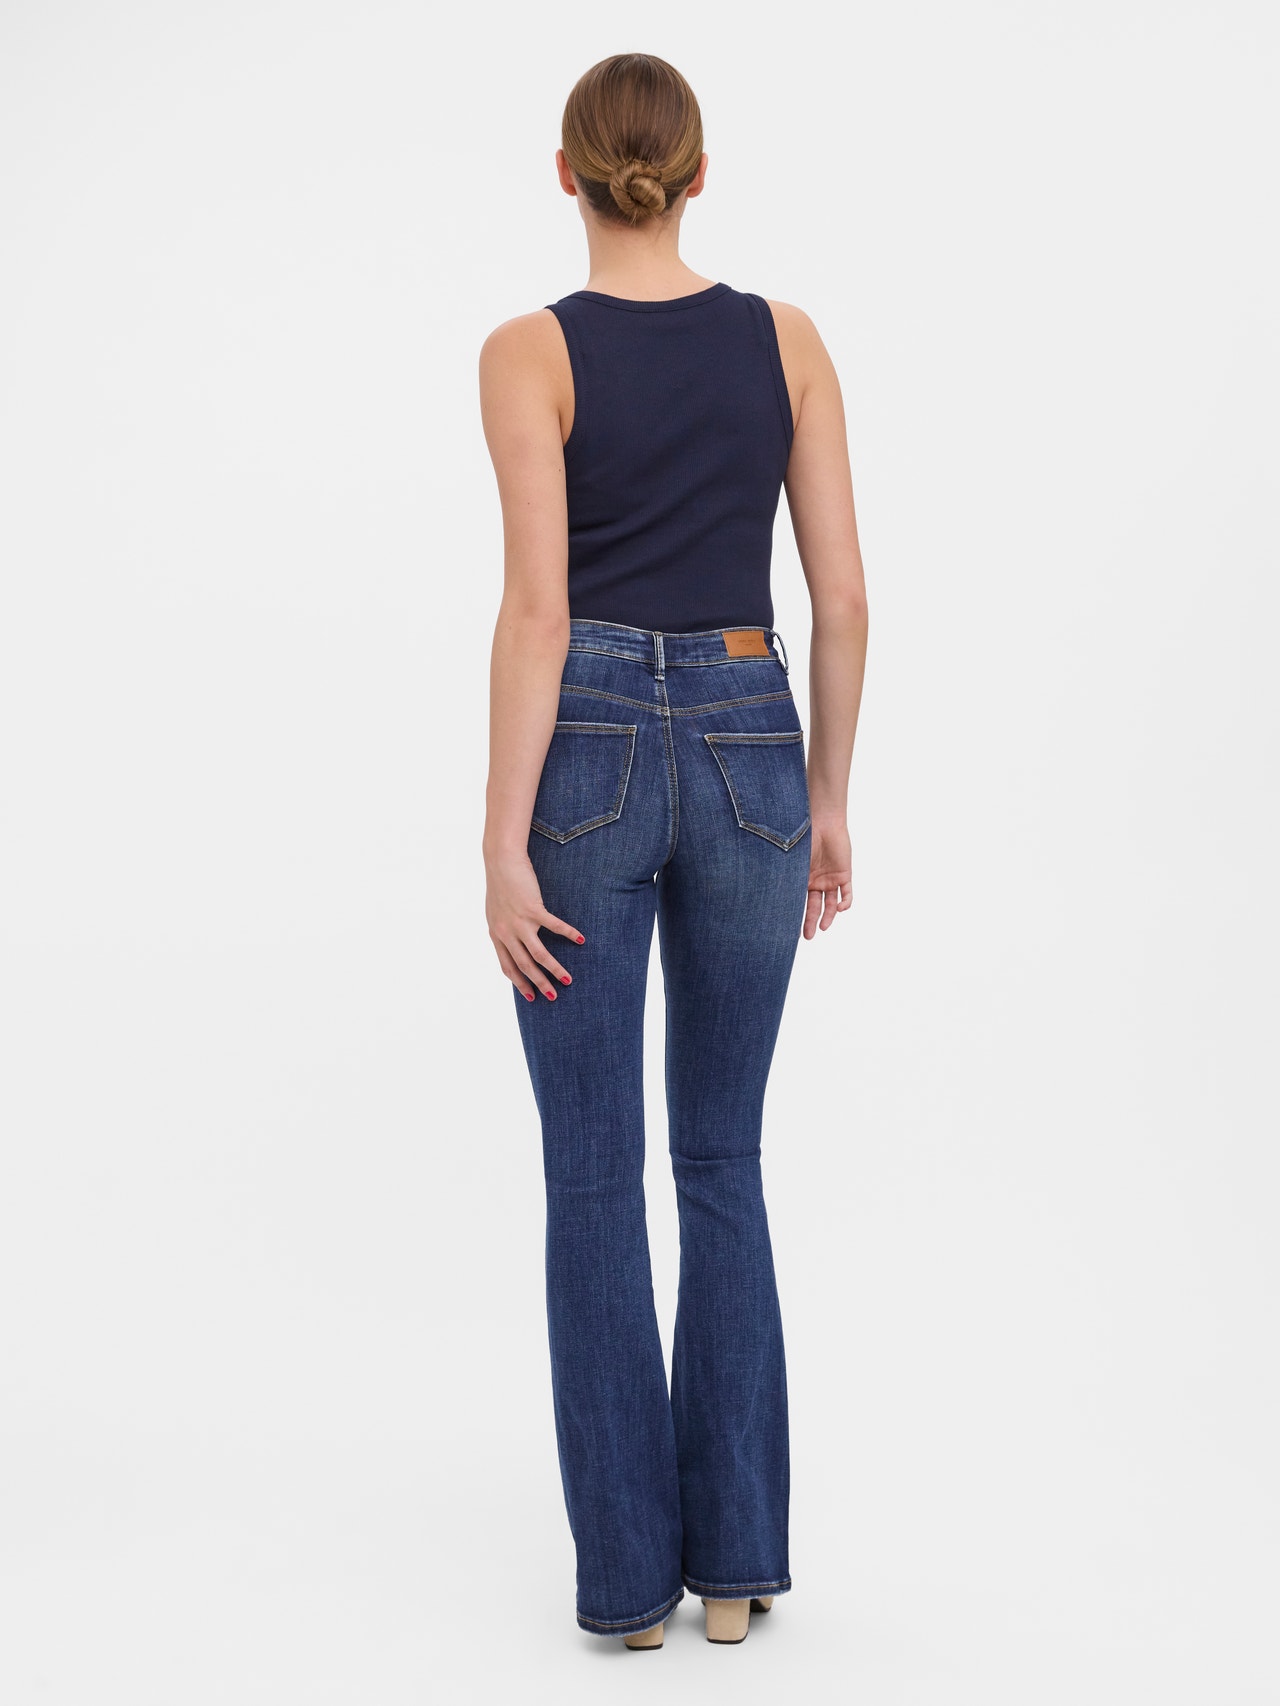 Vero Moda VMSIGA Skinny Fit Jeans -Dark Blue Denim - 10278601